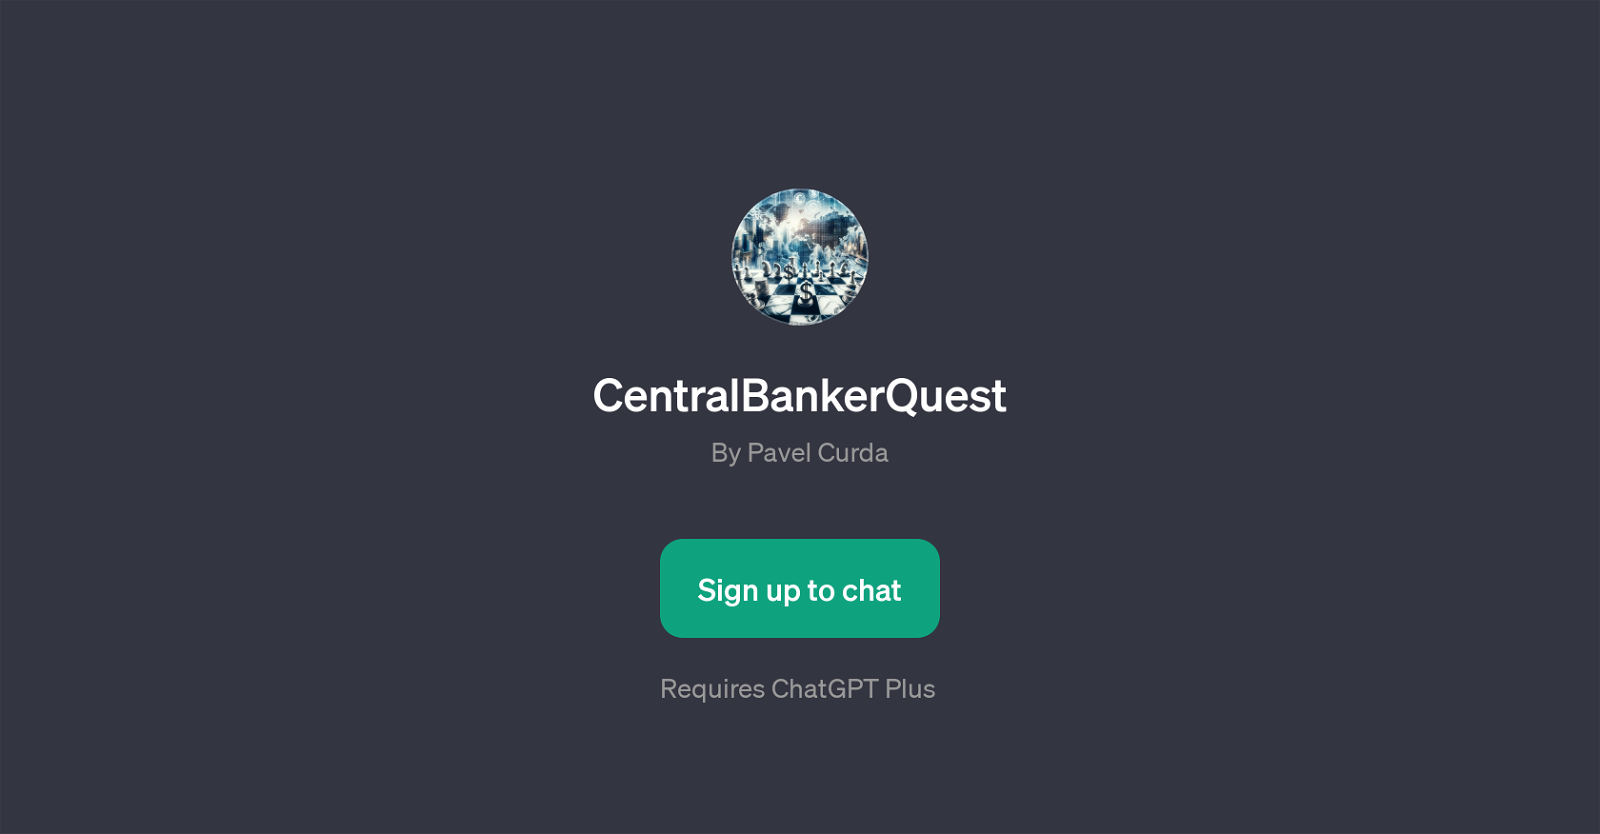 CentralBankerQuest website